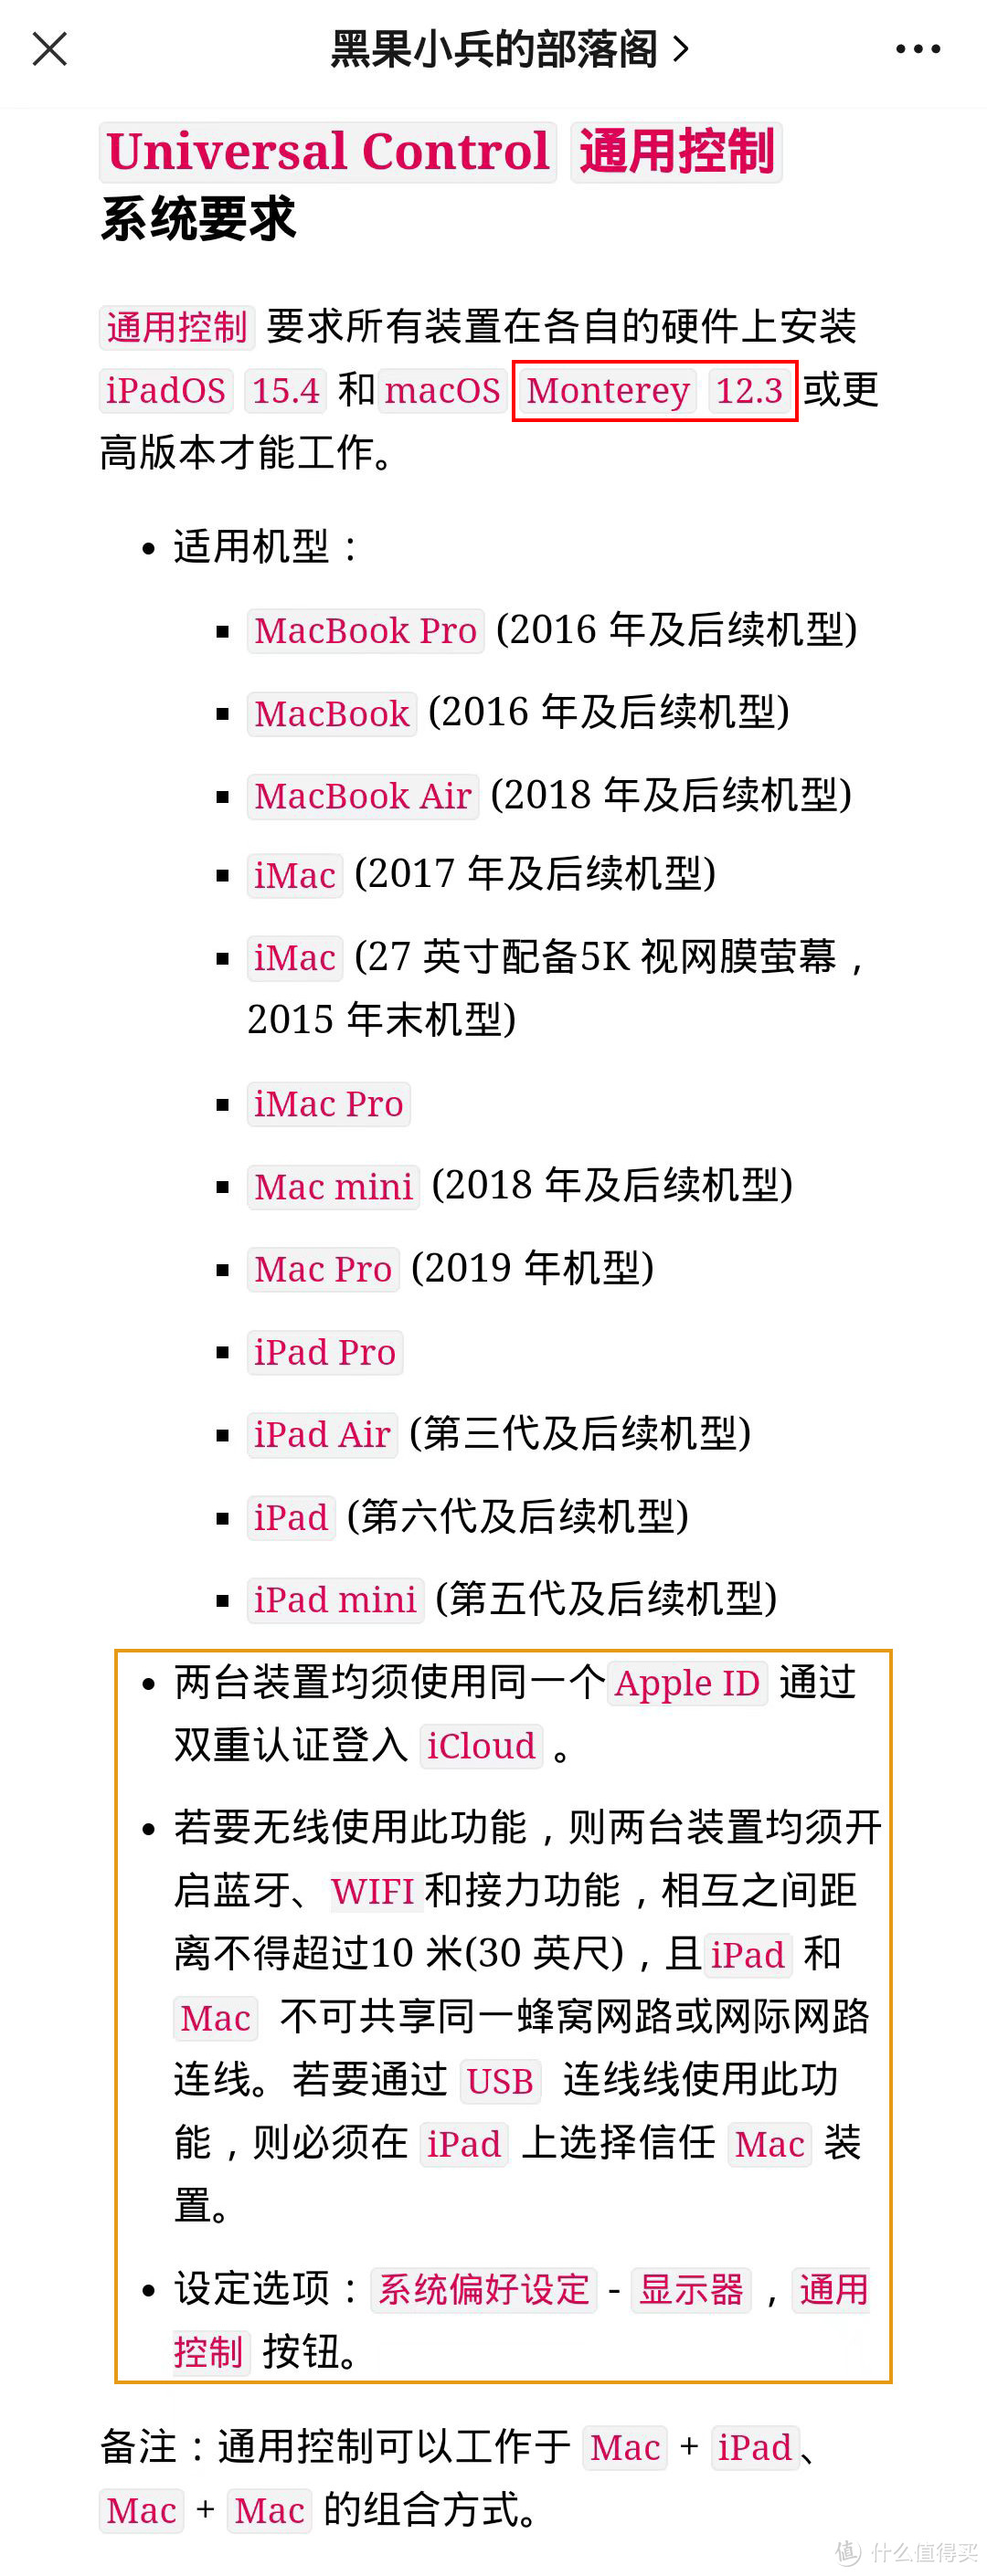 流行に 【即使用可能】iMac(27-inch,Late2013)【大画面27インチ】 開箱